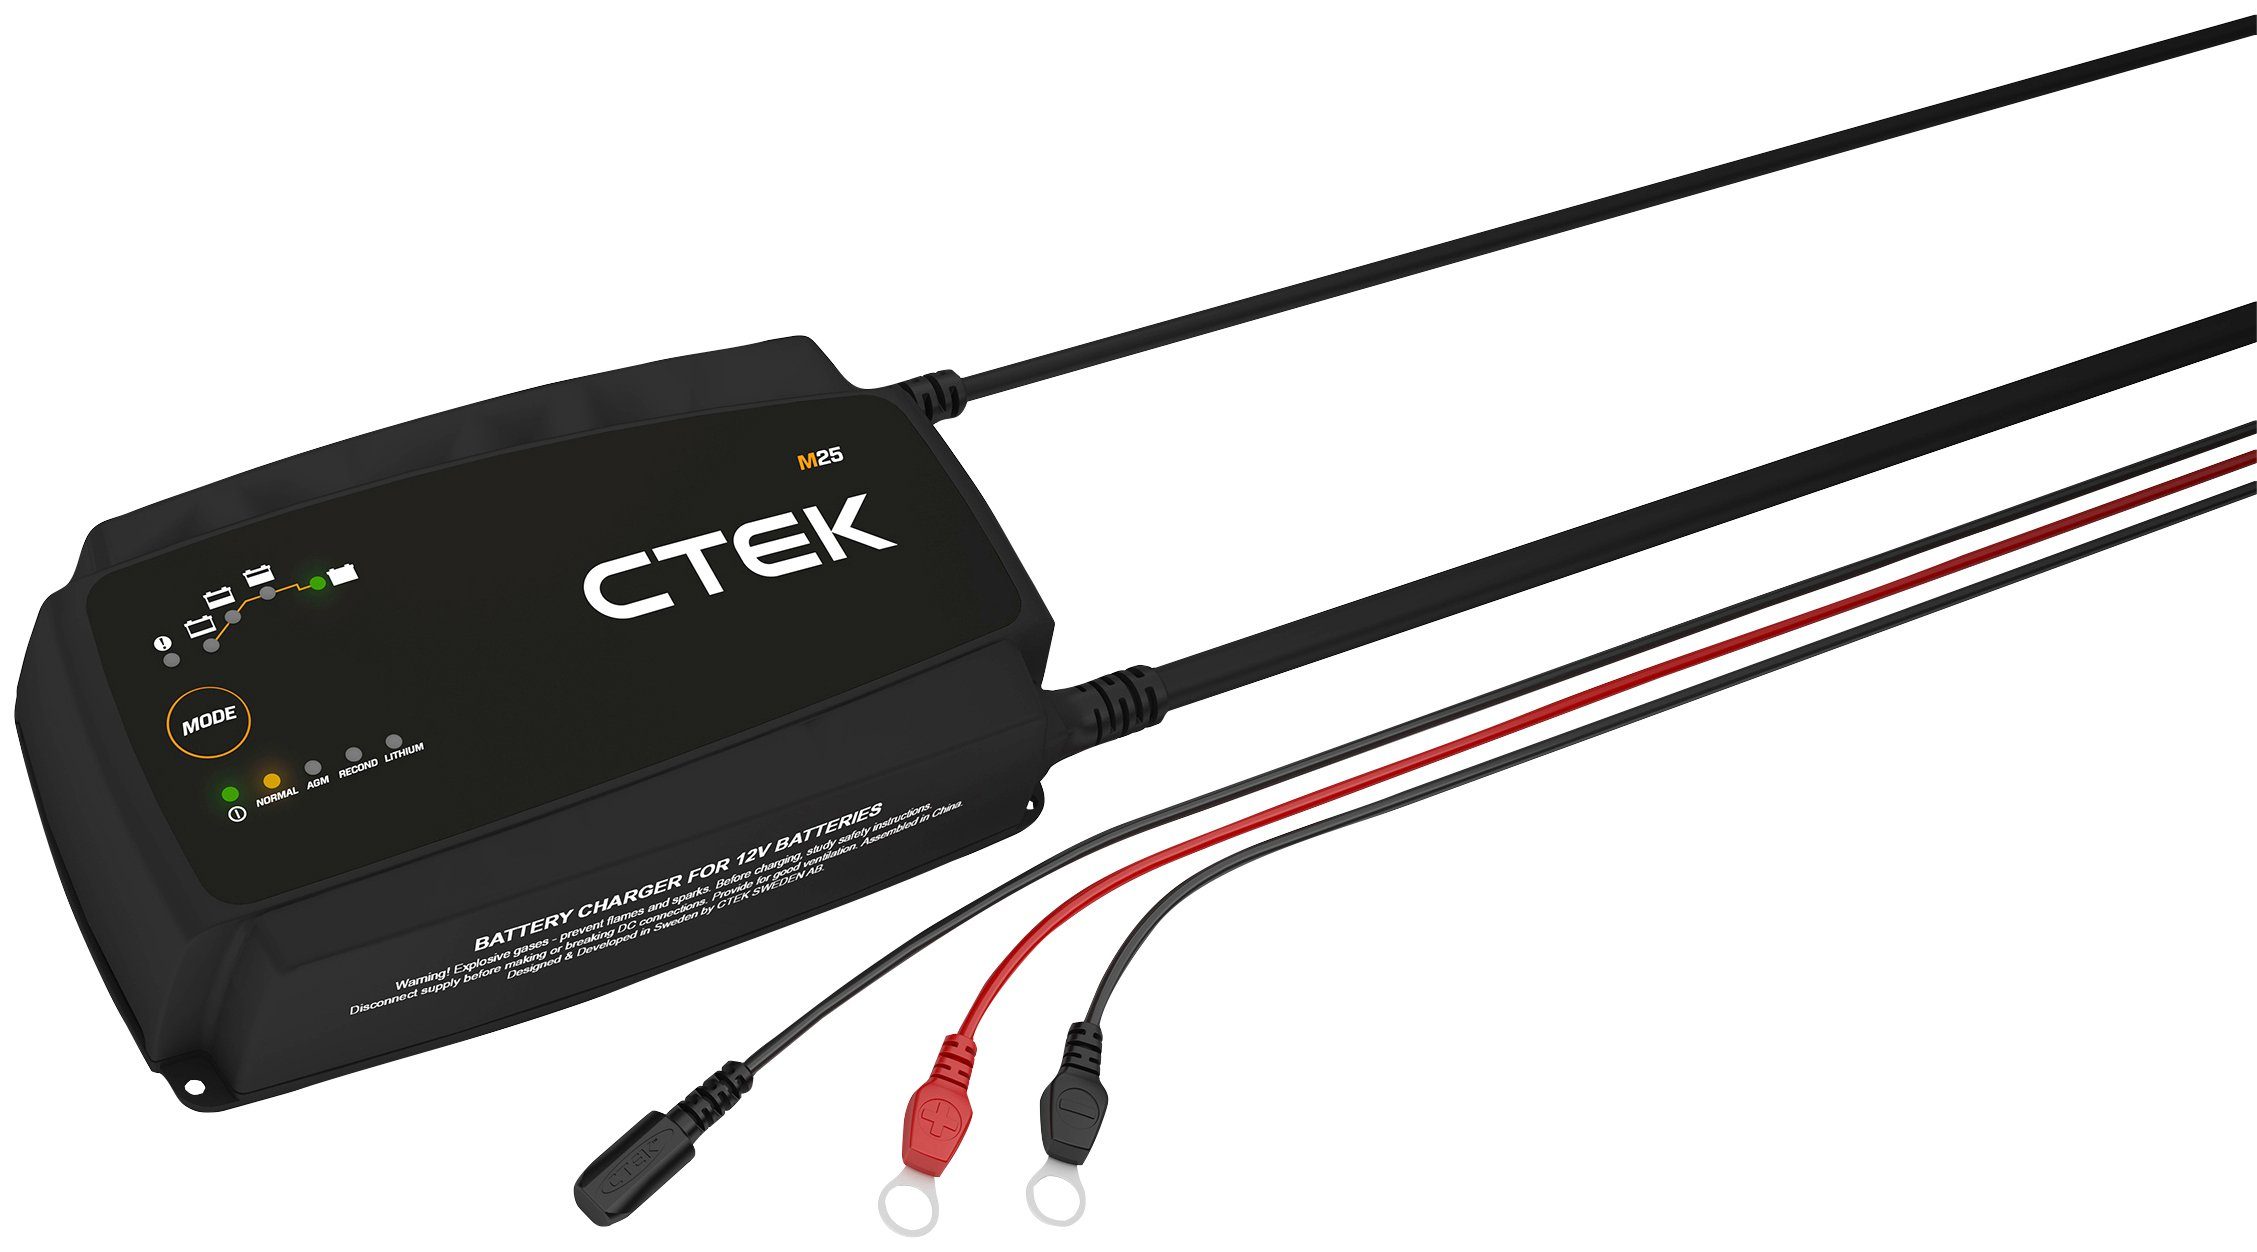 CTEK M25 Batterie-Ladegerät (Vollautomatisch und einfach zu bedienen)